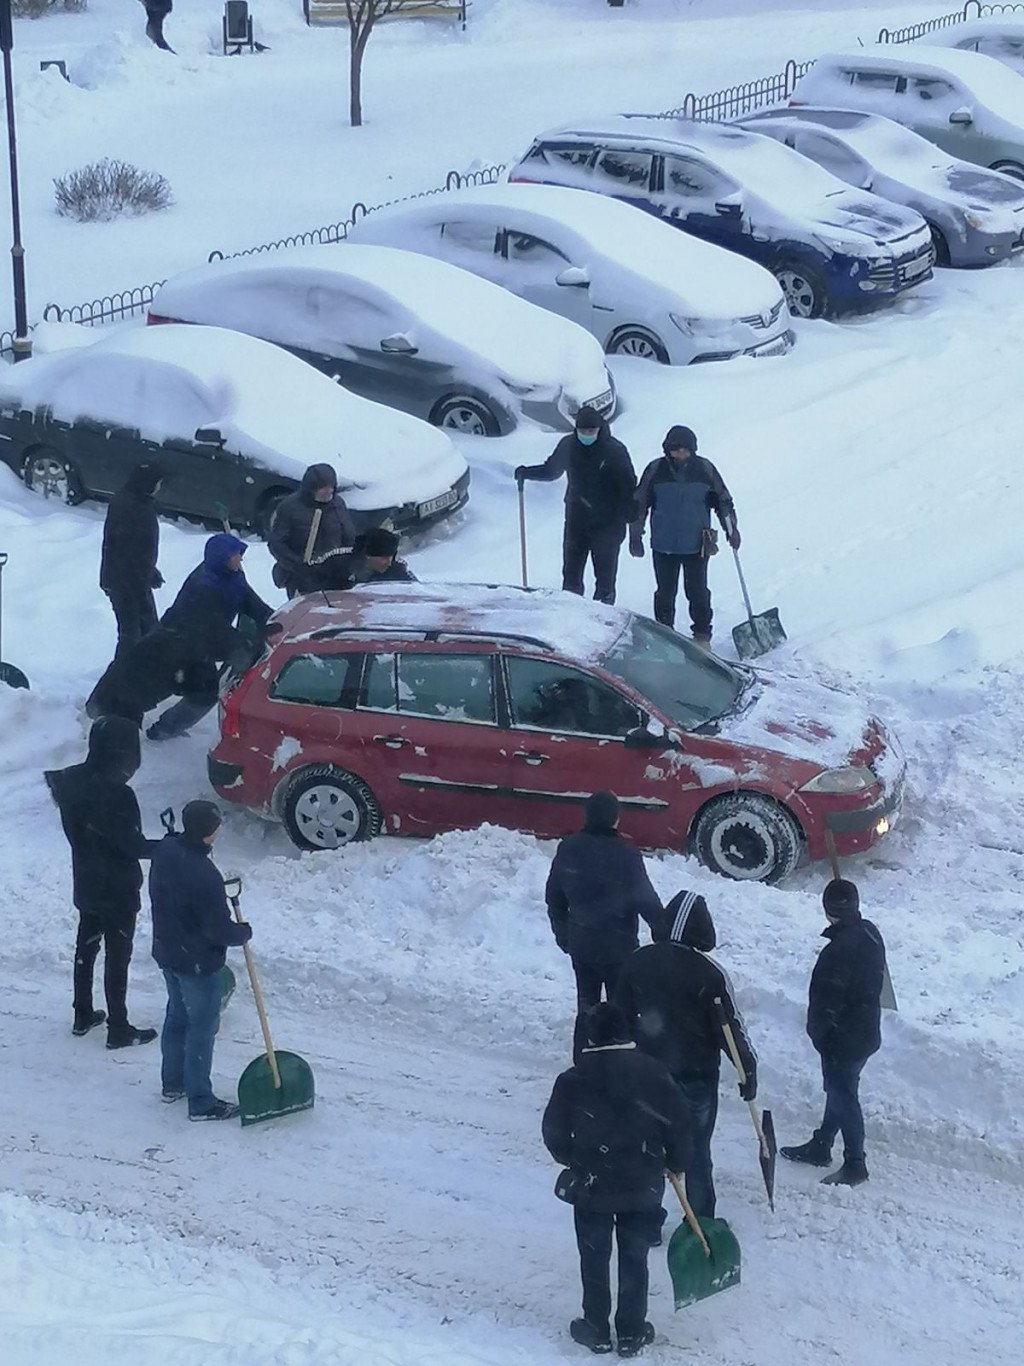 Служащие советов общин Киевщины массово вышли на уборку снега